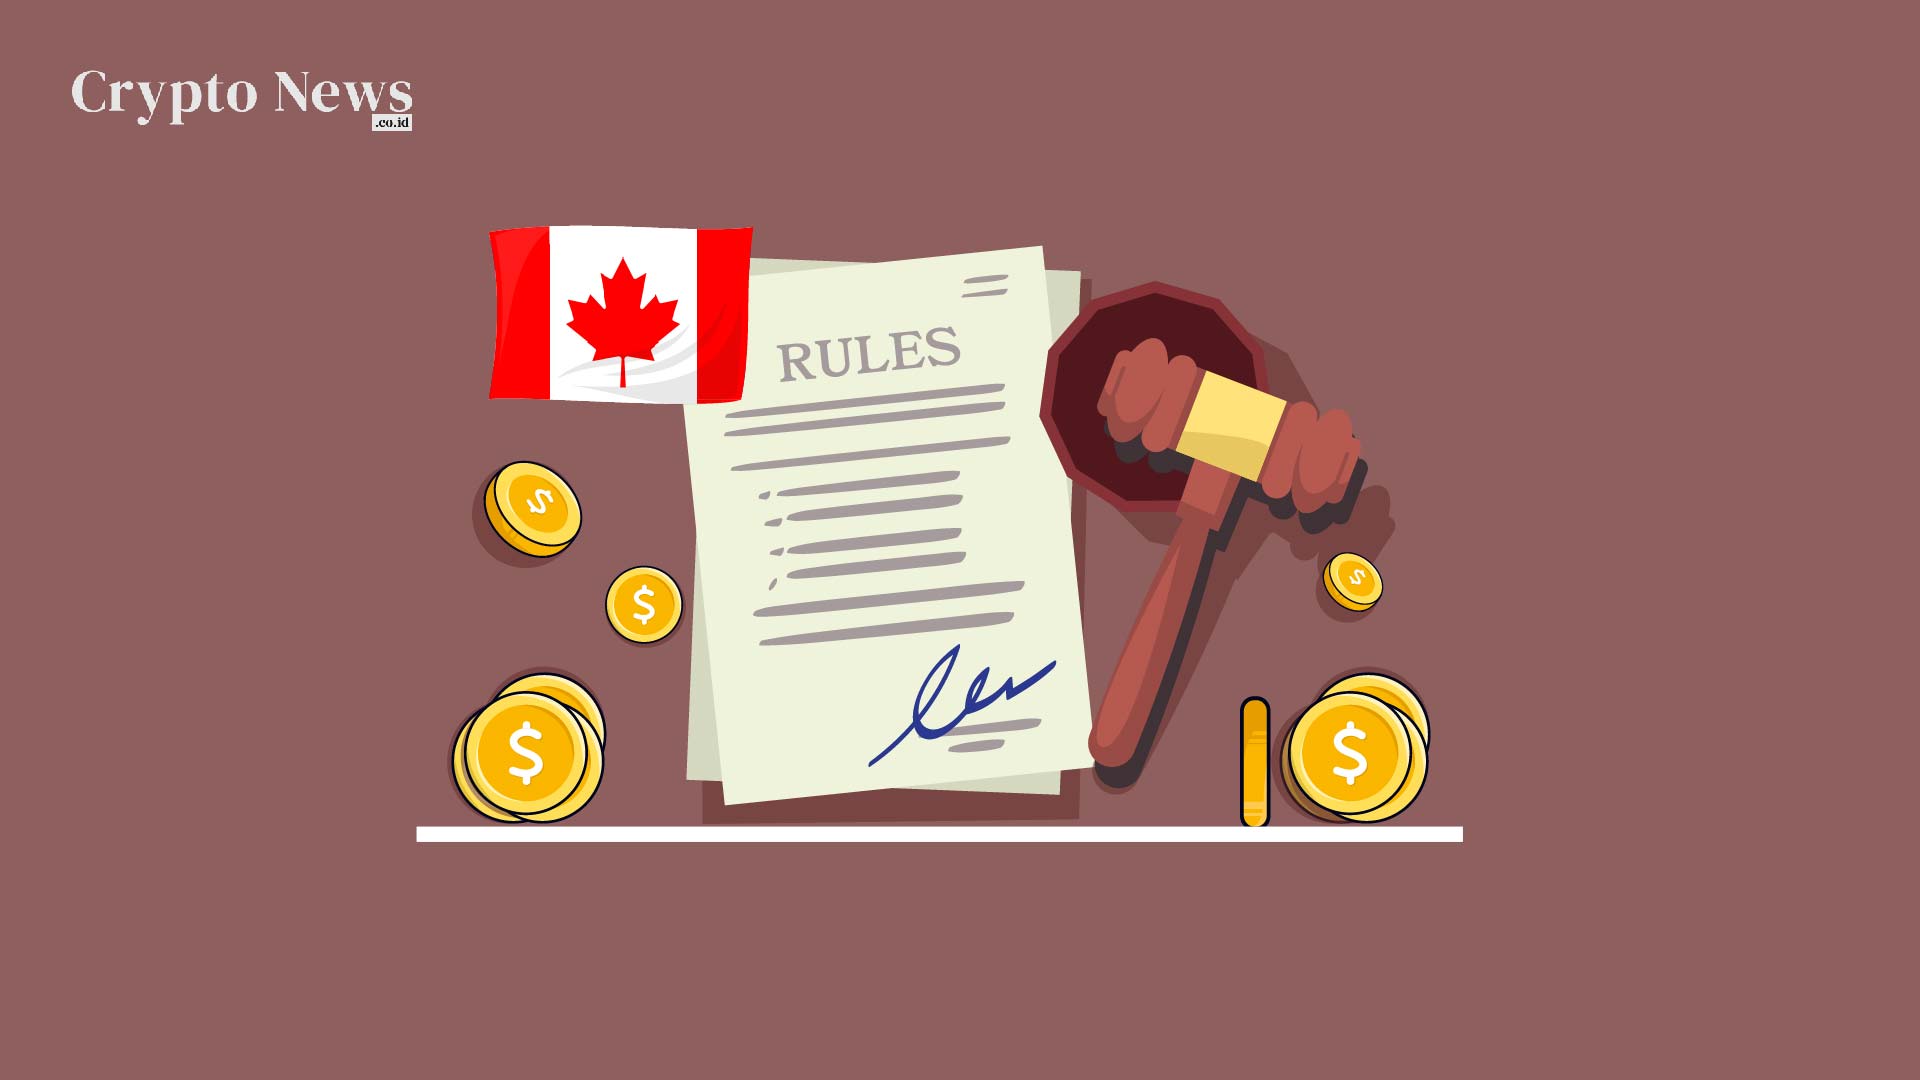 Illust : Kanada Mungkin Sepenuhnya Mengadopsi Aturan Pemantauan Keuangan Saat Ini